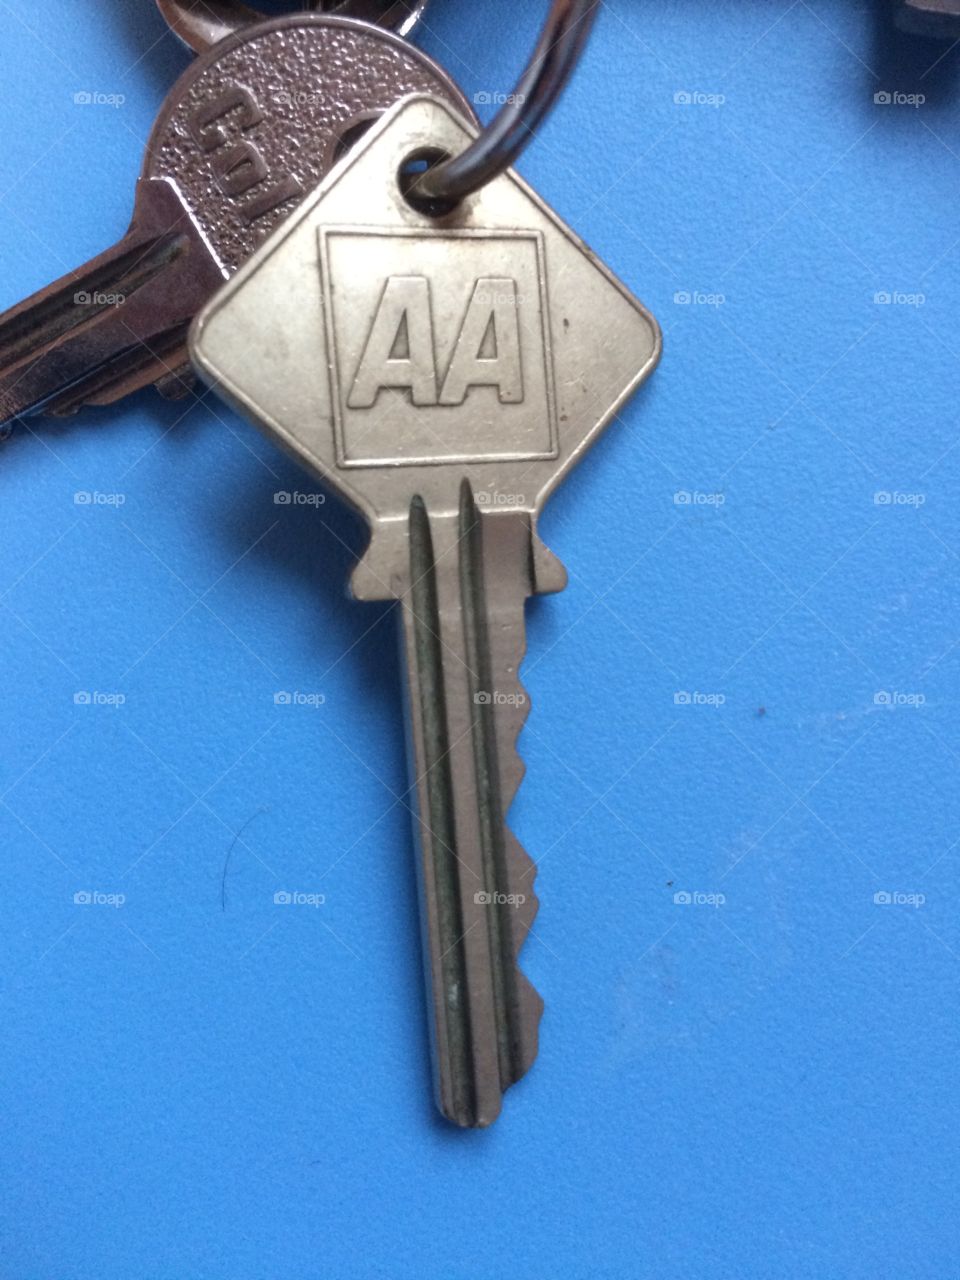 AA key